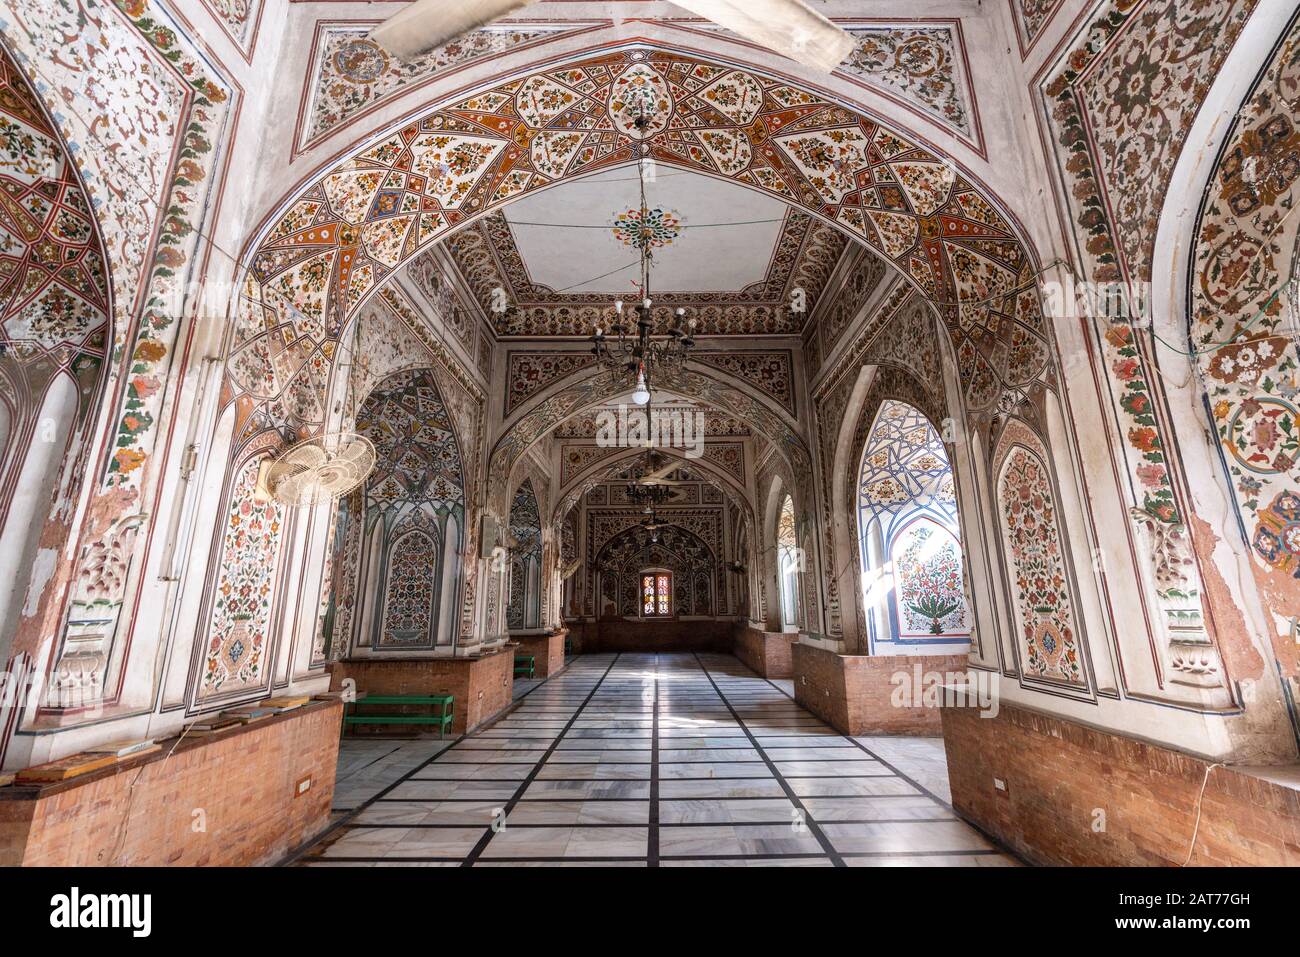 Exemples d'art et d'architecture islamiques dans la mosquée Mahathbat Khan de Peshawar, Khyber Pakhtunkhwa, Pakistan Banque D'Images